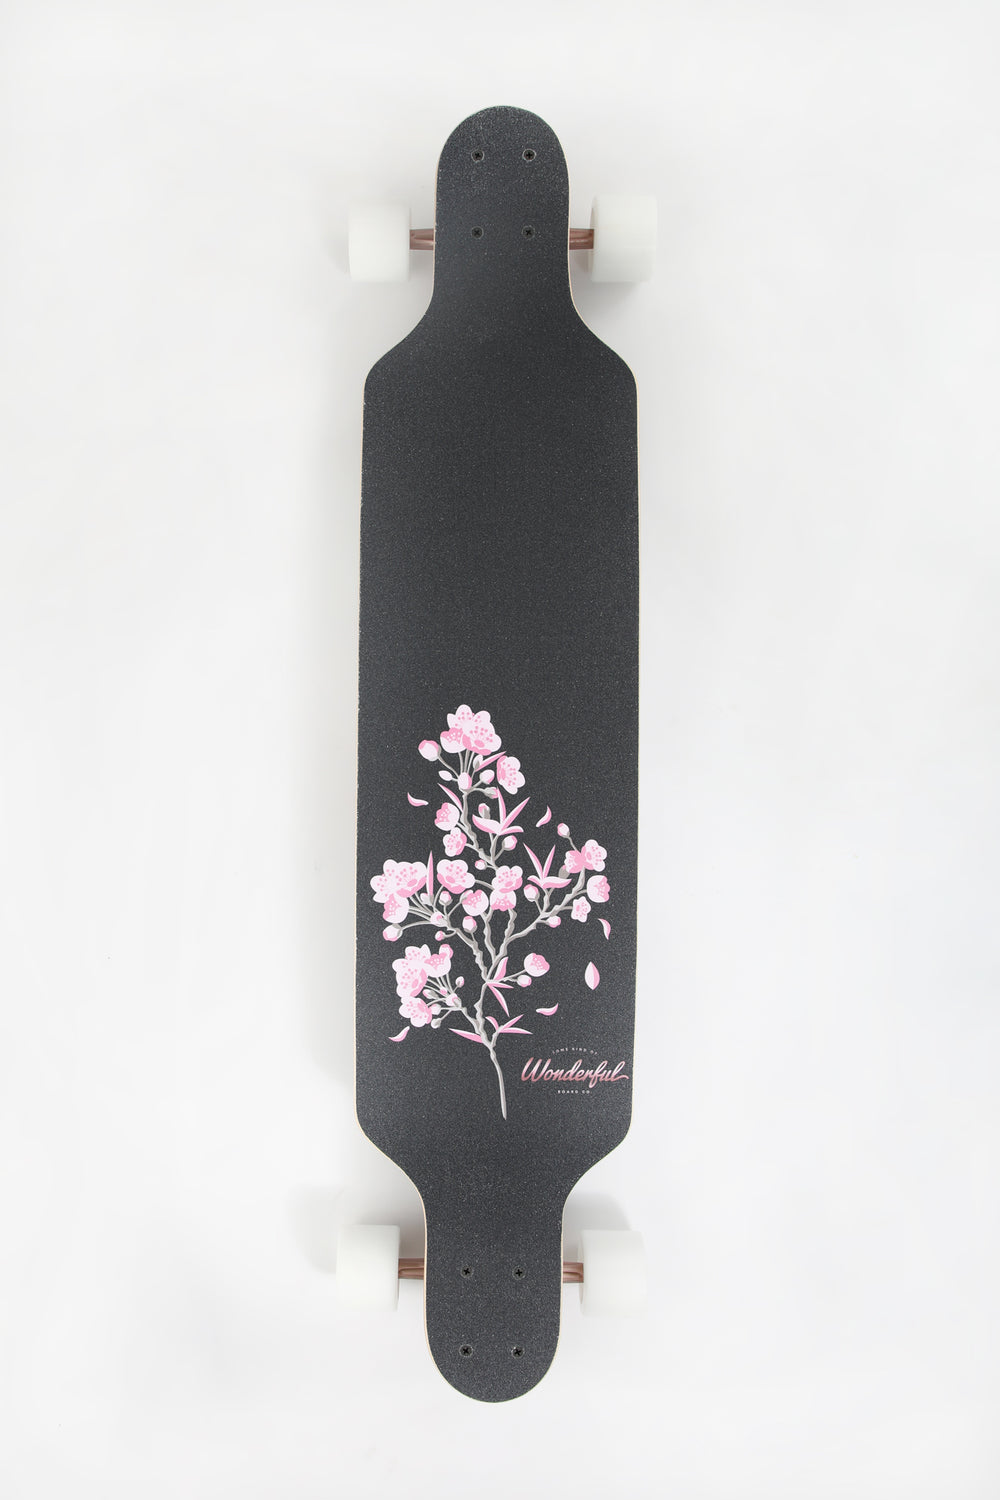 Longboard Fleurs de Cerisiers Wonderful 41